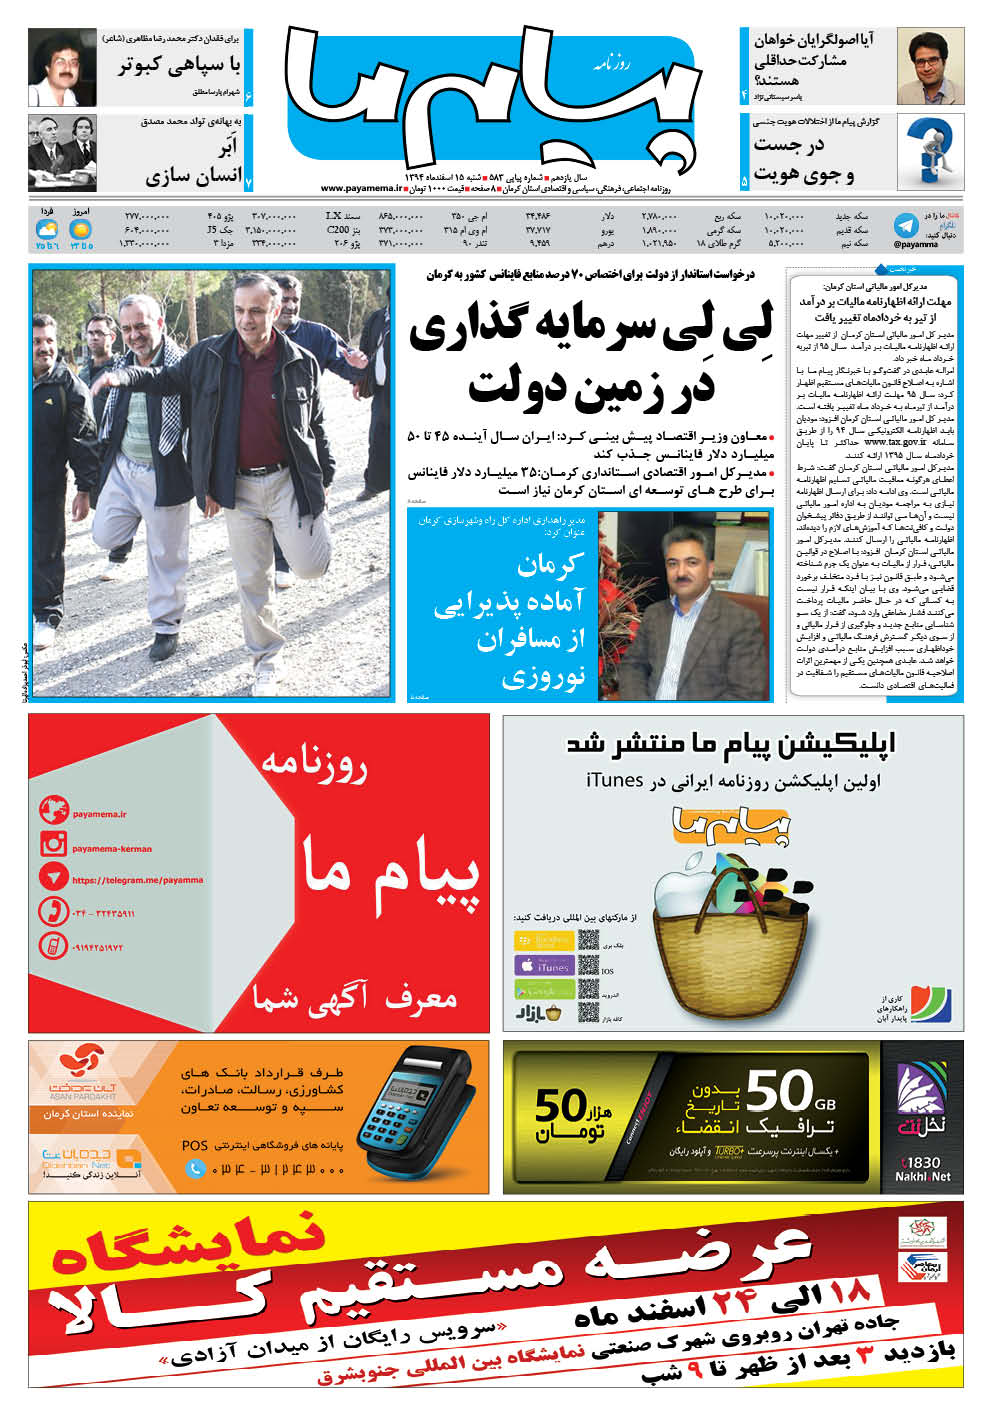 مدیرکل امور مالیاتی استان کرمان: مهلت ارائه اظهارنامه مالیات بر درآمد از تیر به خردادماه تغییر یافت